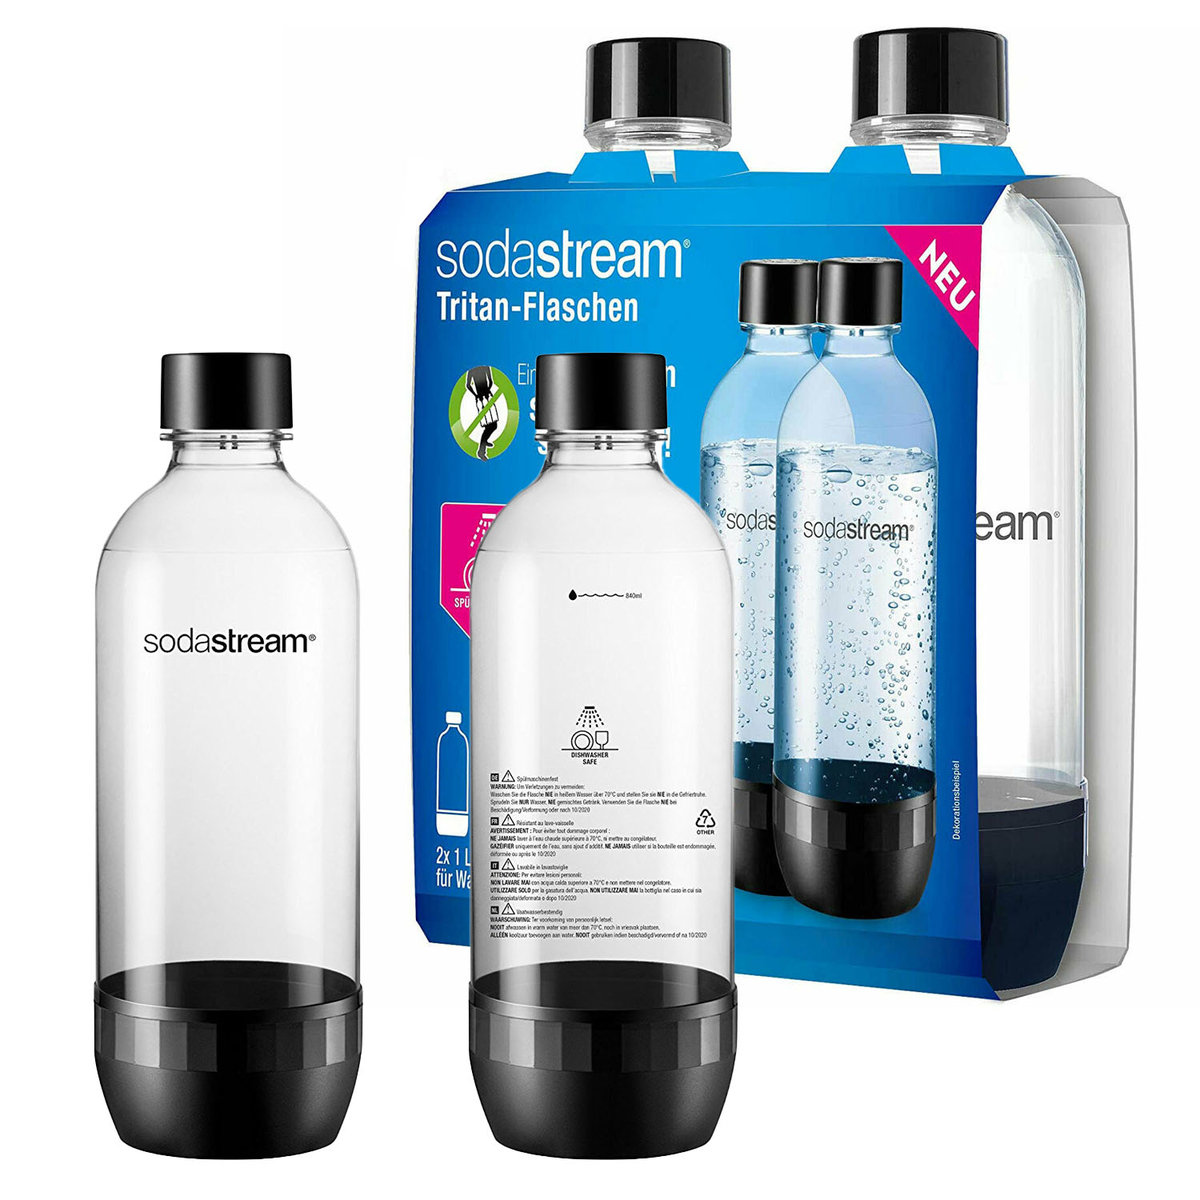 Sodastream DuoPack 2 x 1 l butelka z tritanu nadaje się do mycia w zmywarce (nie zawiera BPA) zapasowe butelki do saturatora wody z butelkami PET